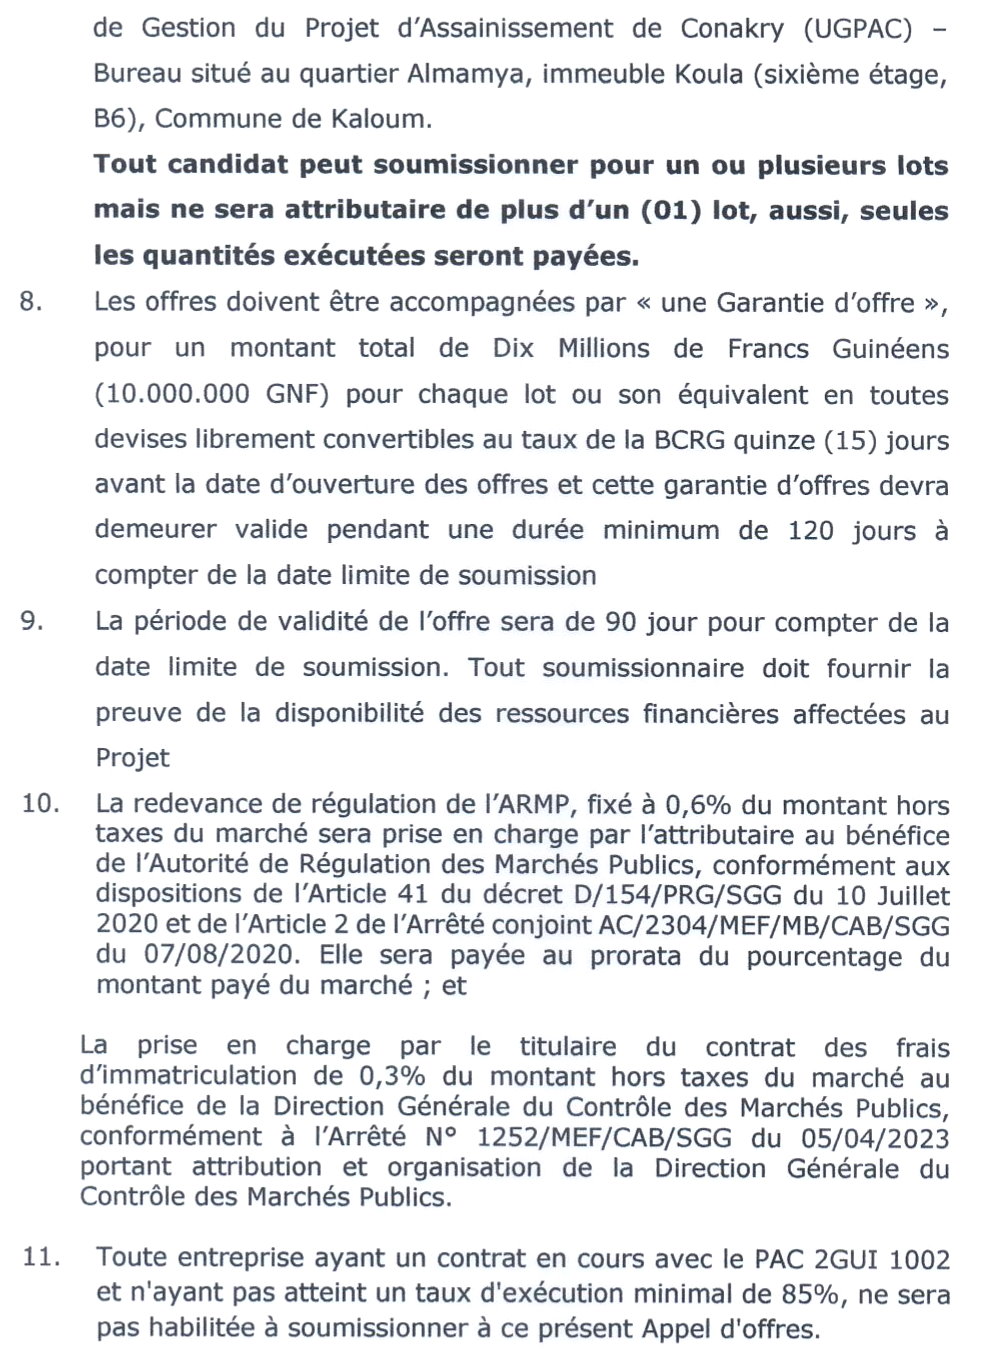 Maintenance Des Canaux De Drainage Dans Les Communes De Matoto et Ratoma | Page 4